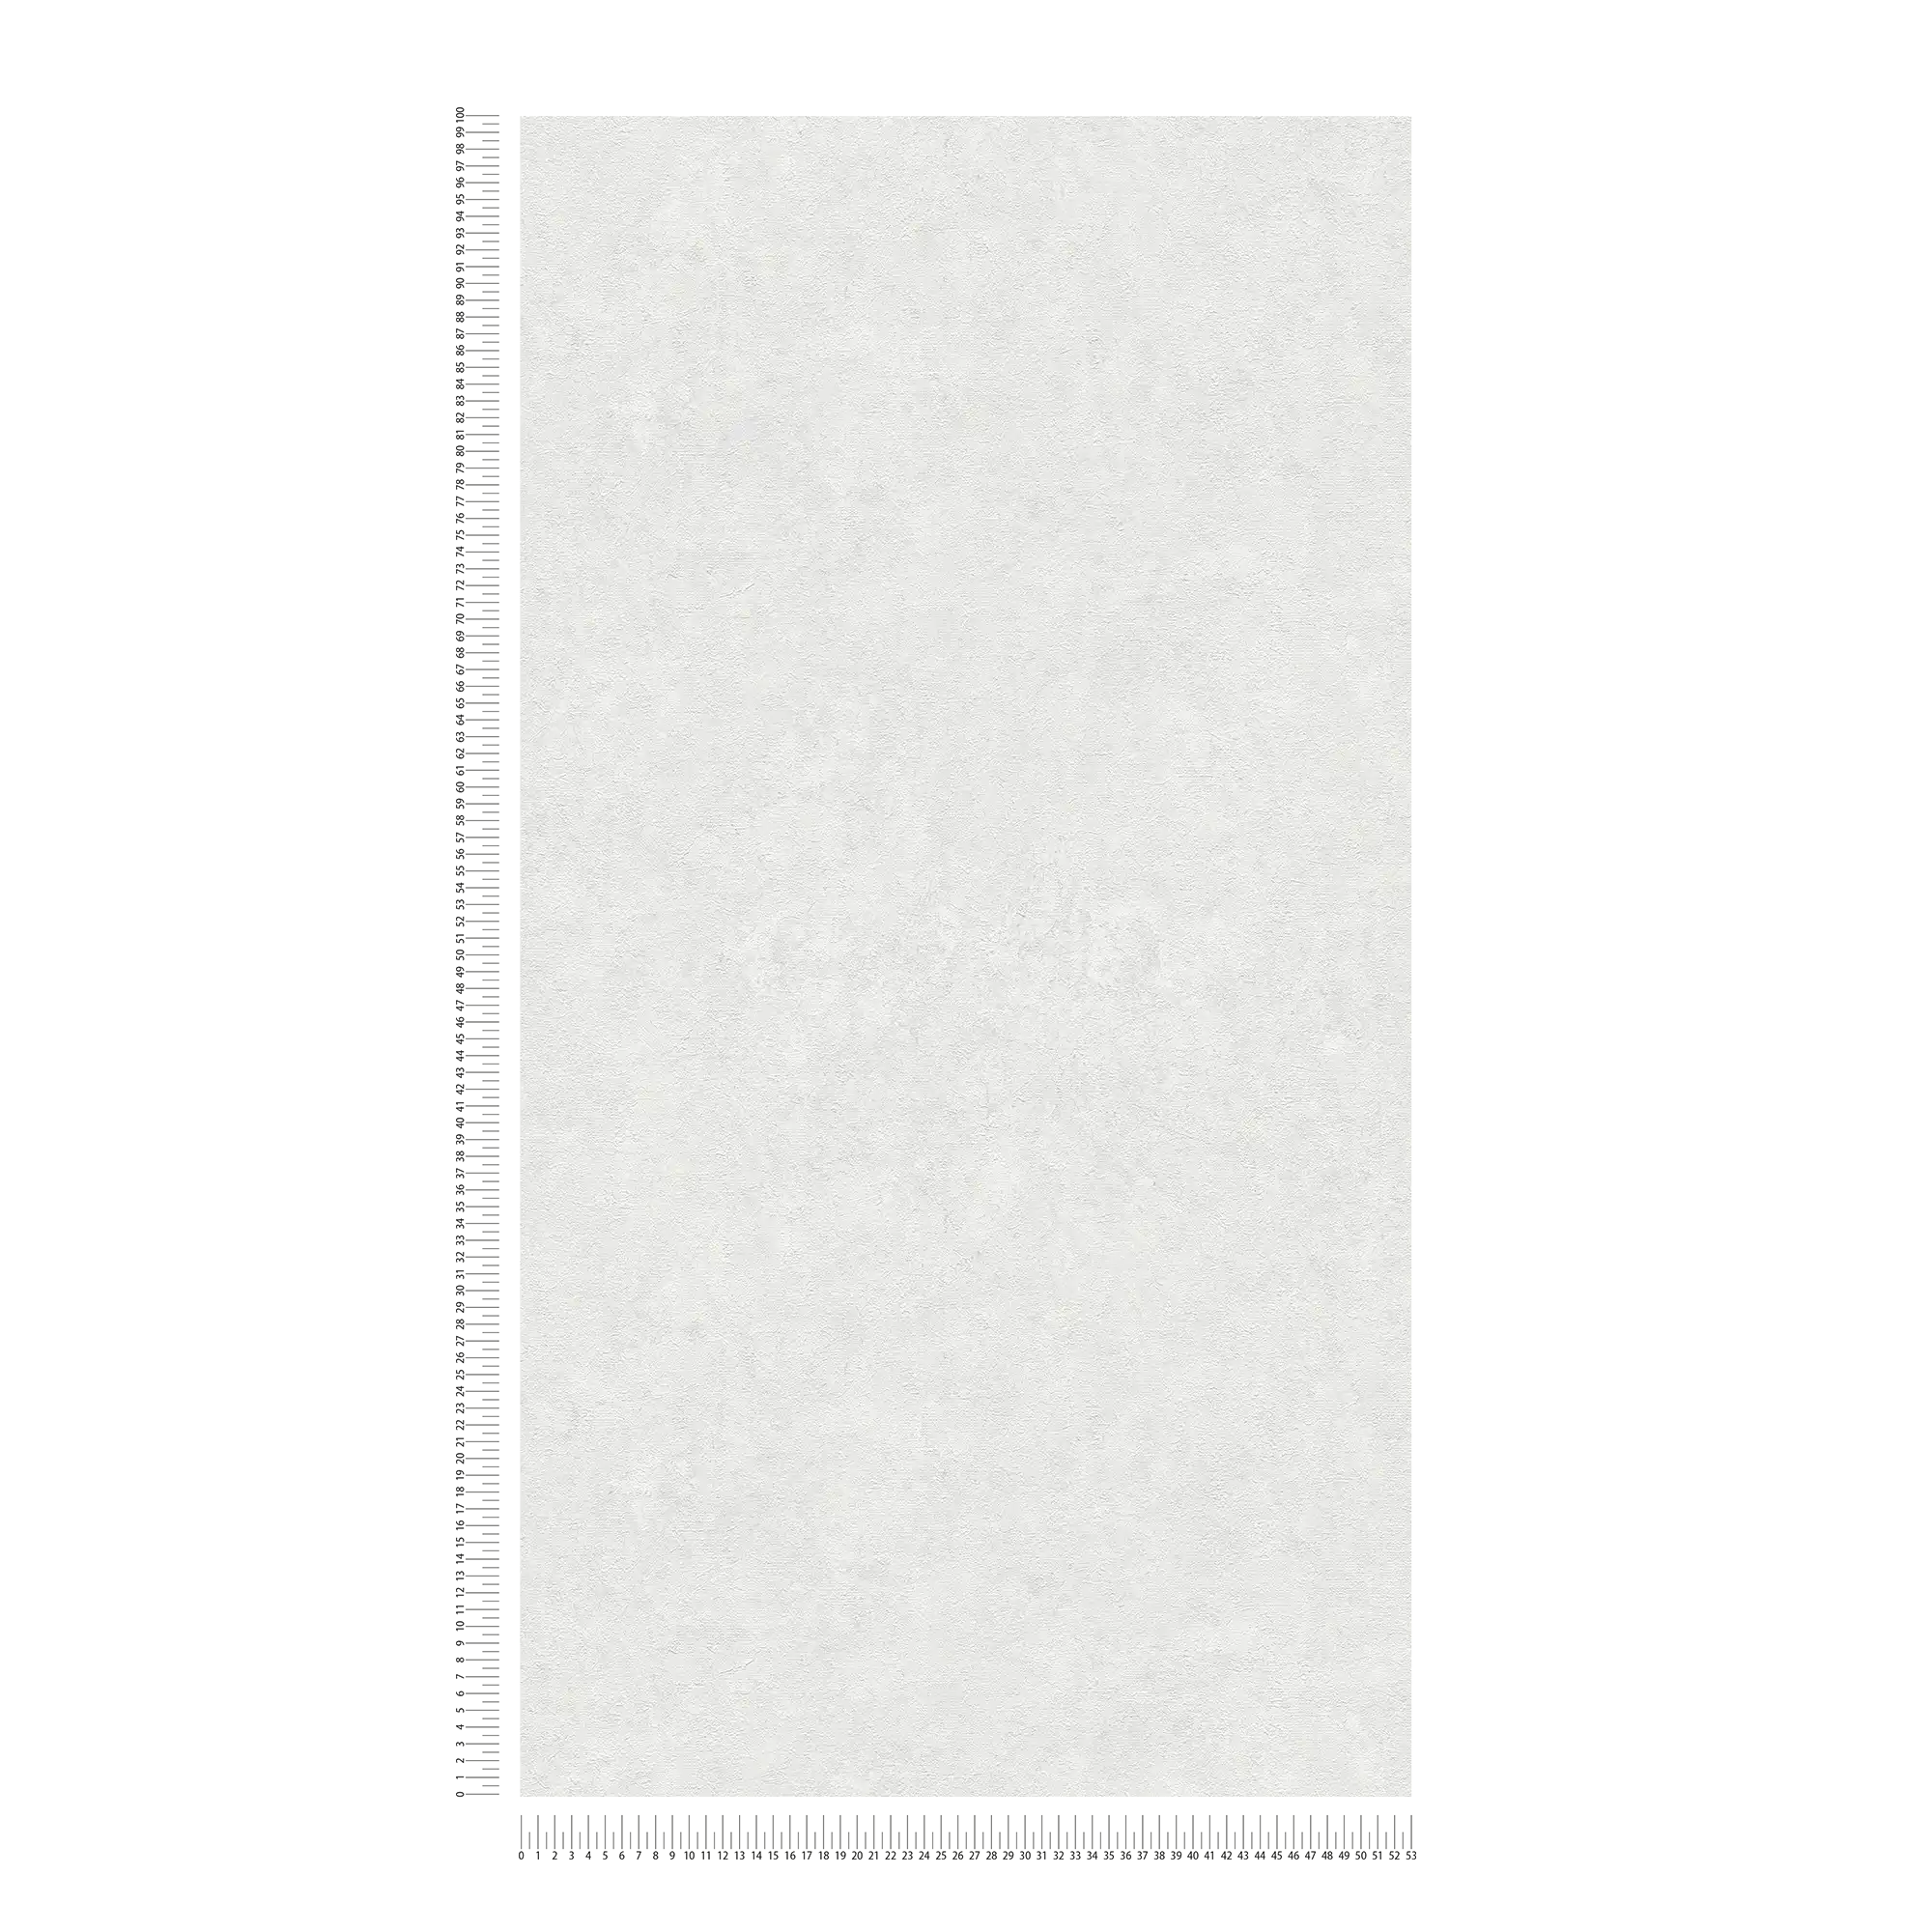             Carta da parati unitaria con motivo strutturato in tonalità tenui - bianco, grigio
        